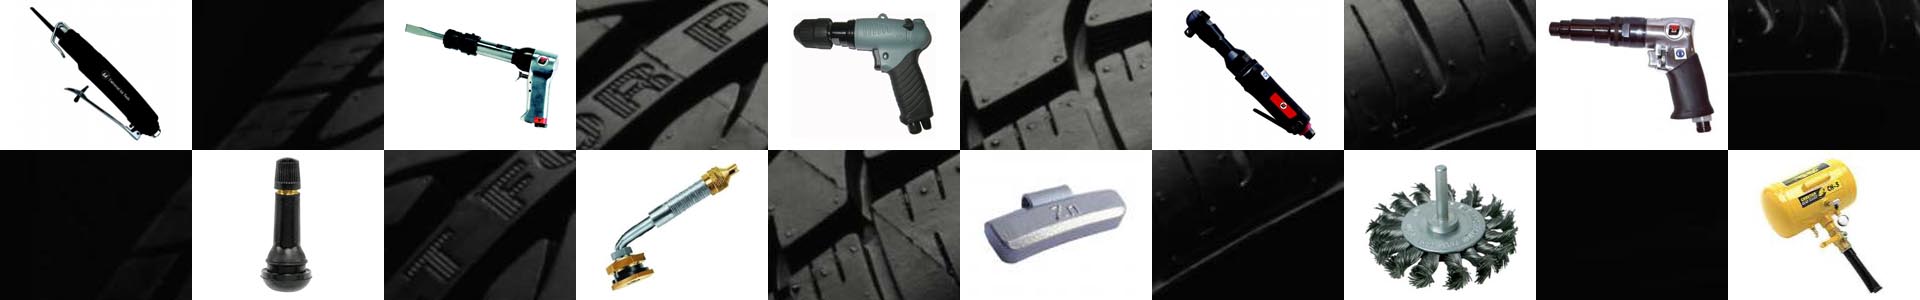 Tyre Tools - Tyre Repair Kit